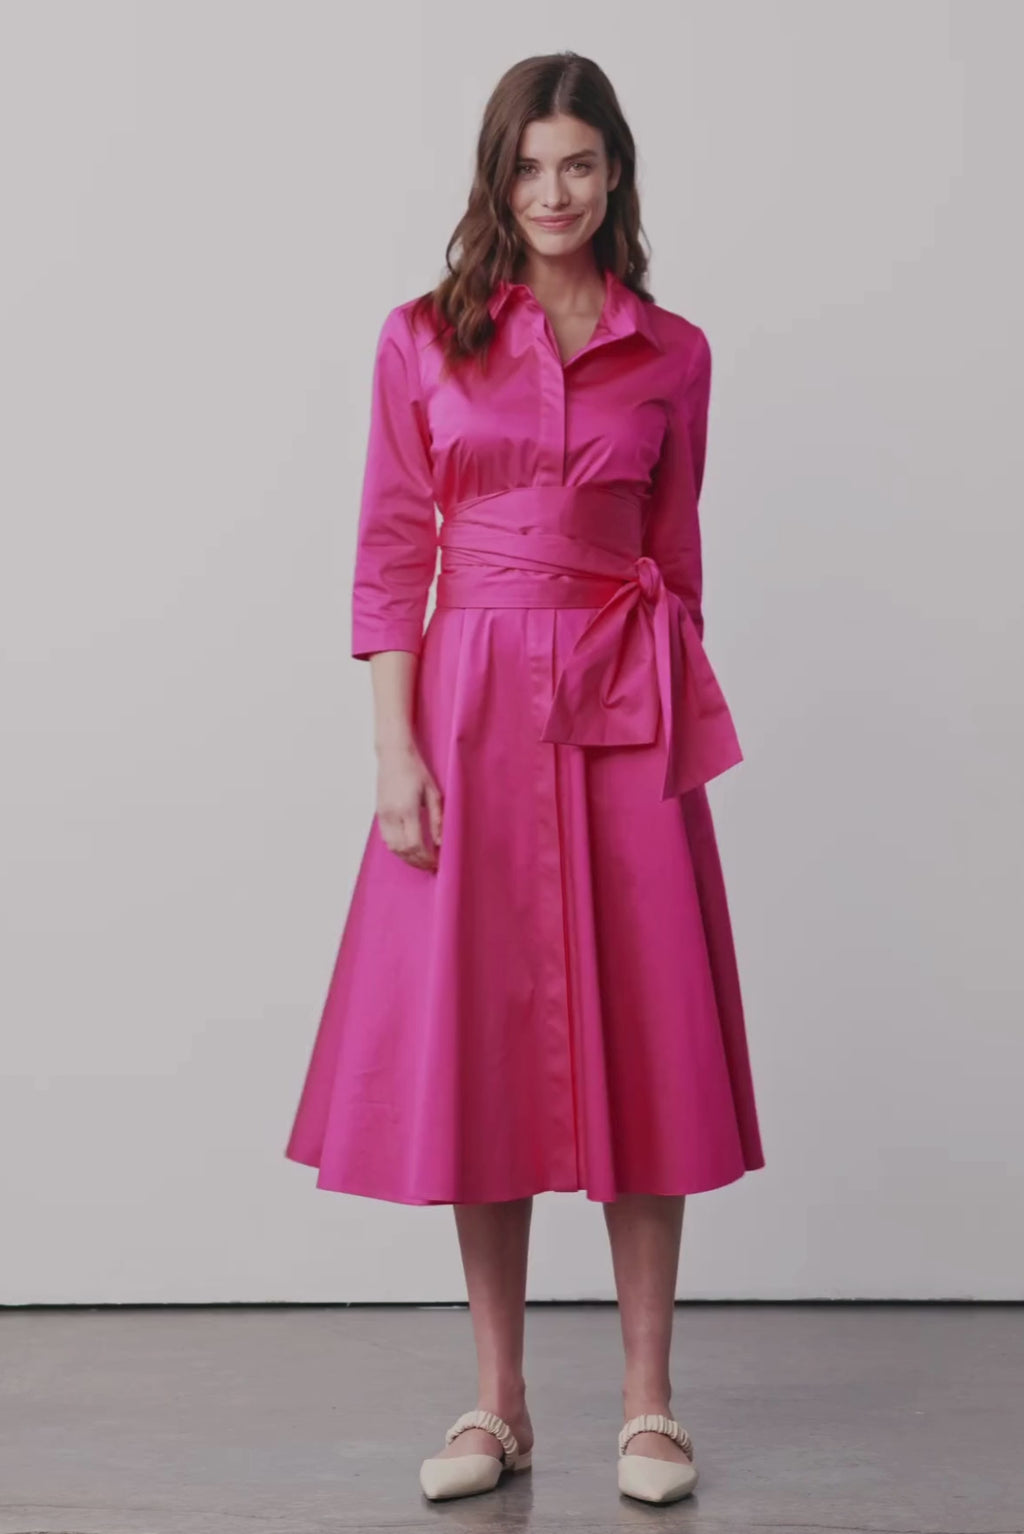 Modell dreht sich und trägt ein Blusenkleid mit Bindegürtel in einem leuchtenden Pink 